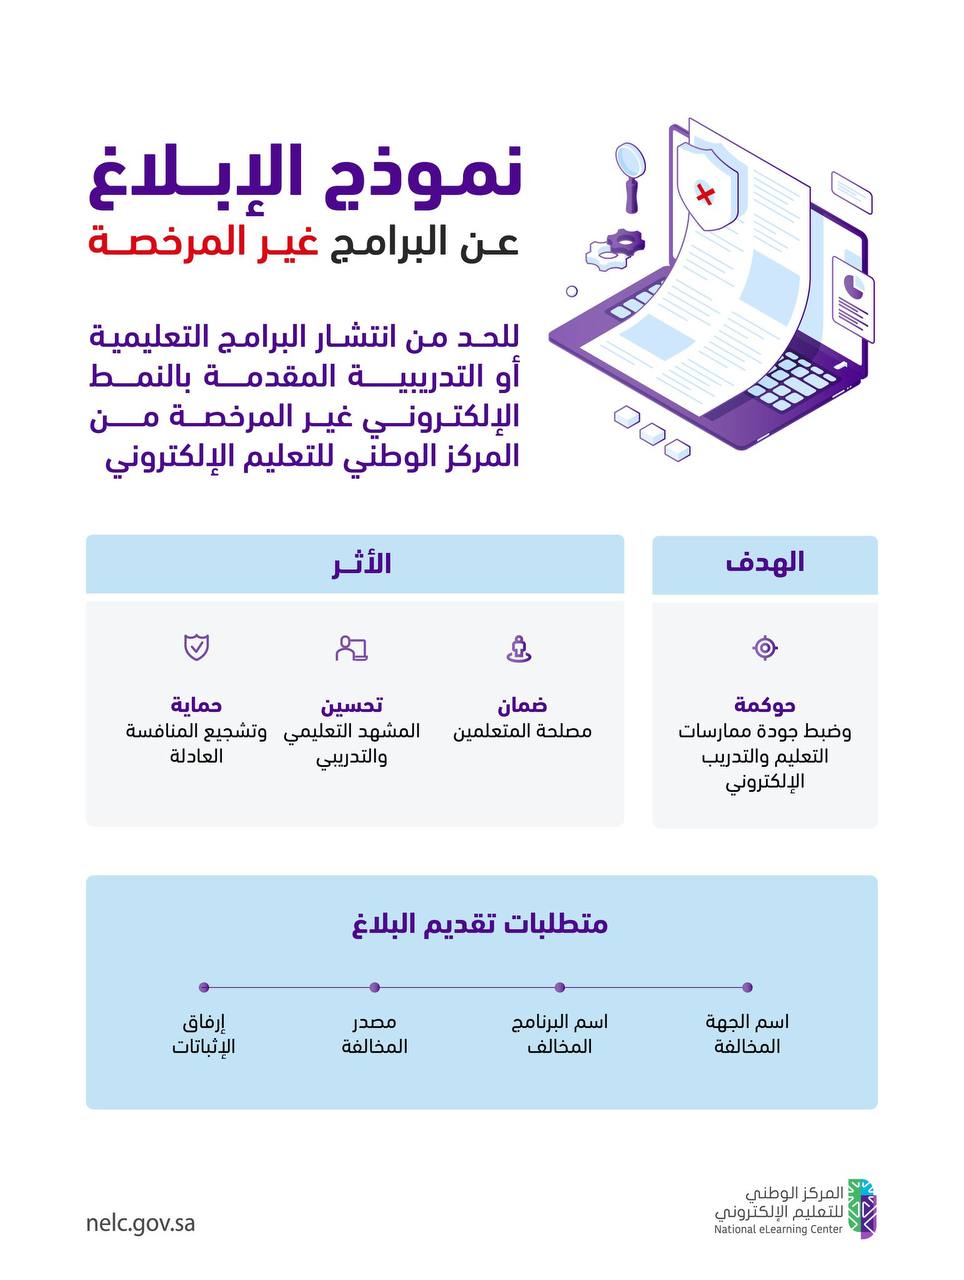 خبر هام من المركز الوطني للتعليم الإلكتروني في السعودية